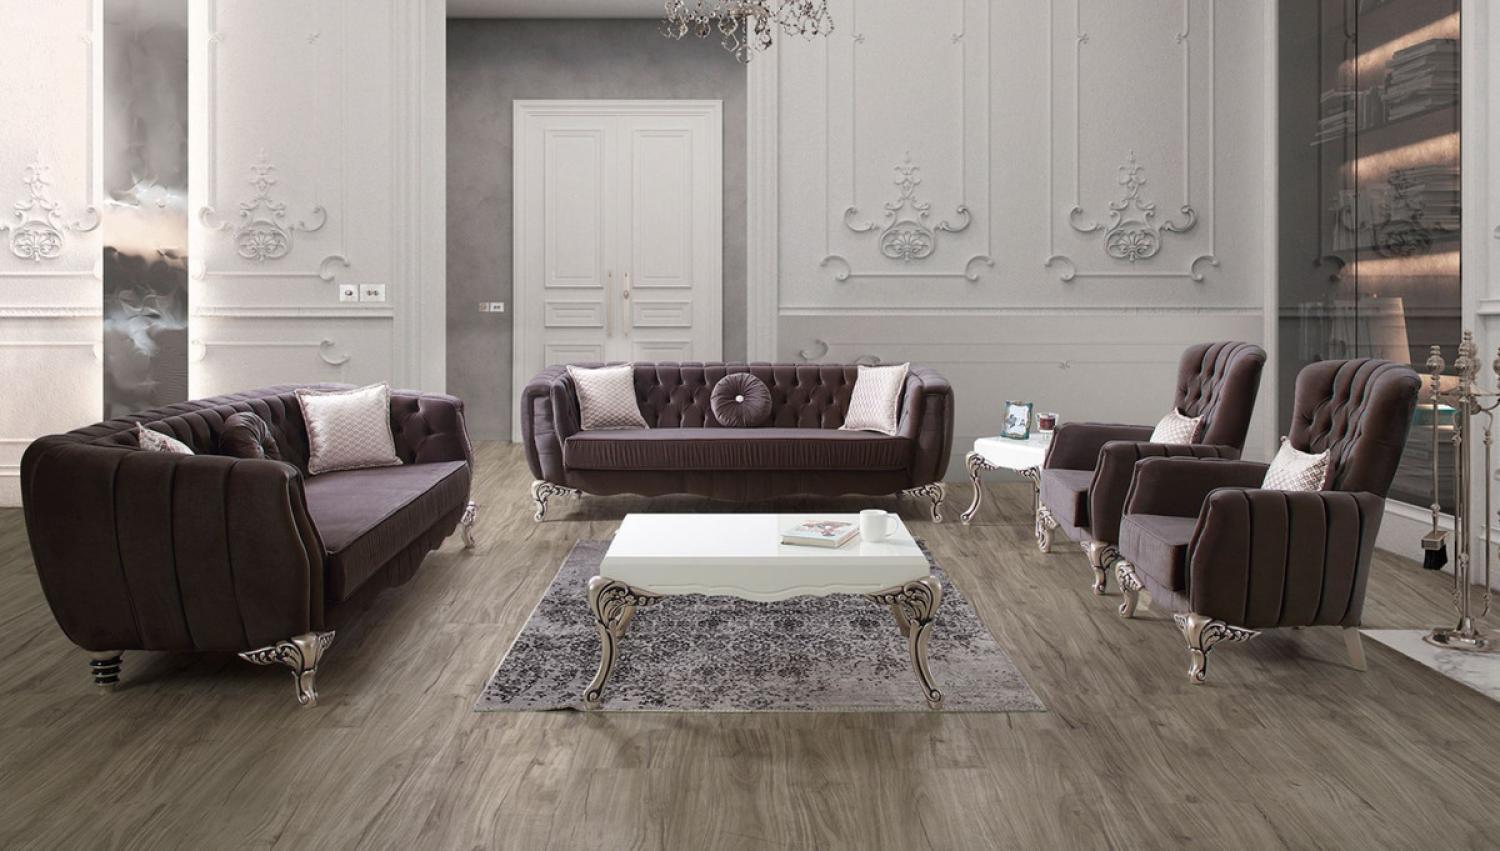 Casa Padrino Luxus Barock Wohnzimmer Set Lila / Silber - 2 Sofas & 2 Sessel & 1 Couchtisch - Elegante Wohnzimmer Möbel im Barockstil Bild 1